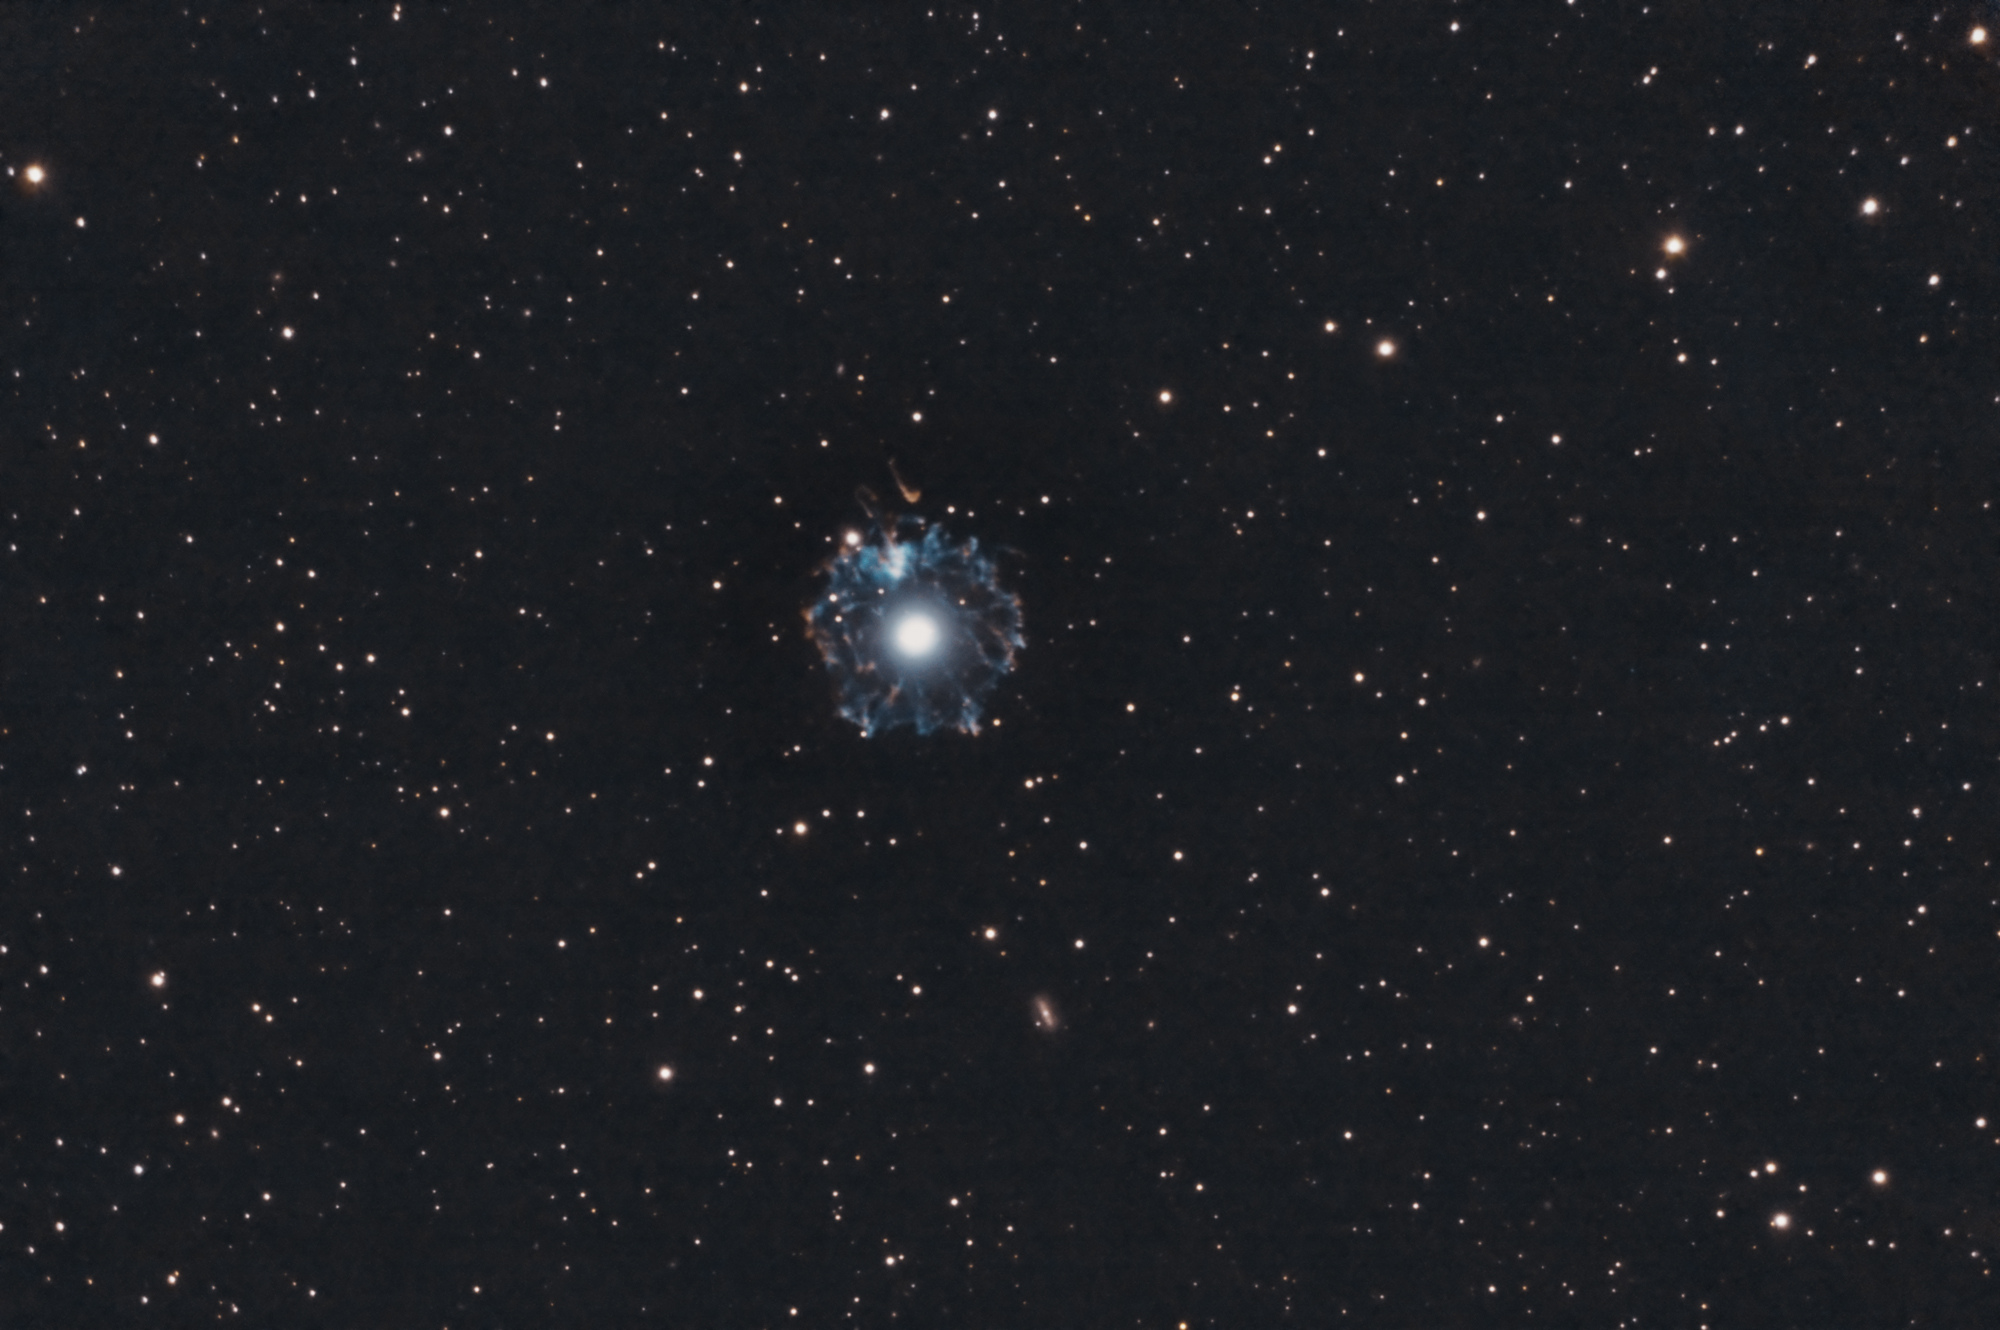 NGC6543_SHO_bicolor_ac_web.jpg.35c0a53cbe0c08f1ad5c840c8172d0ea.jpg